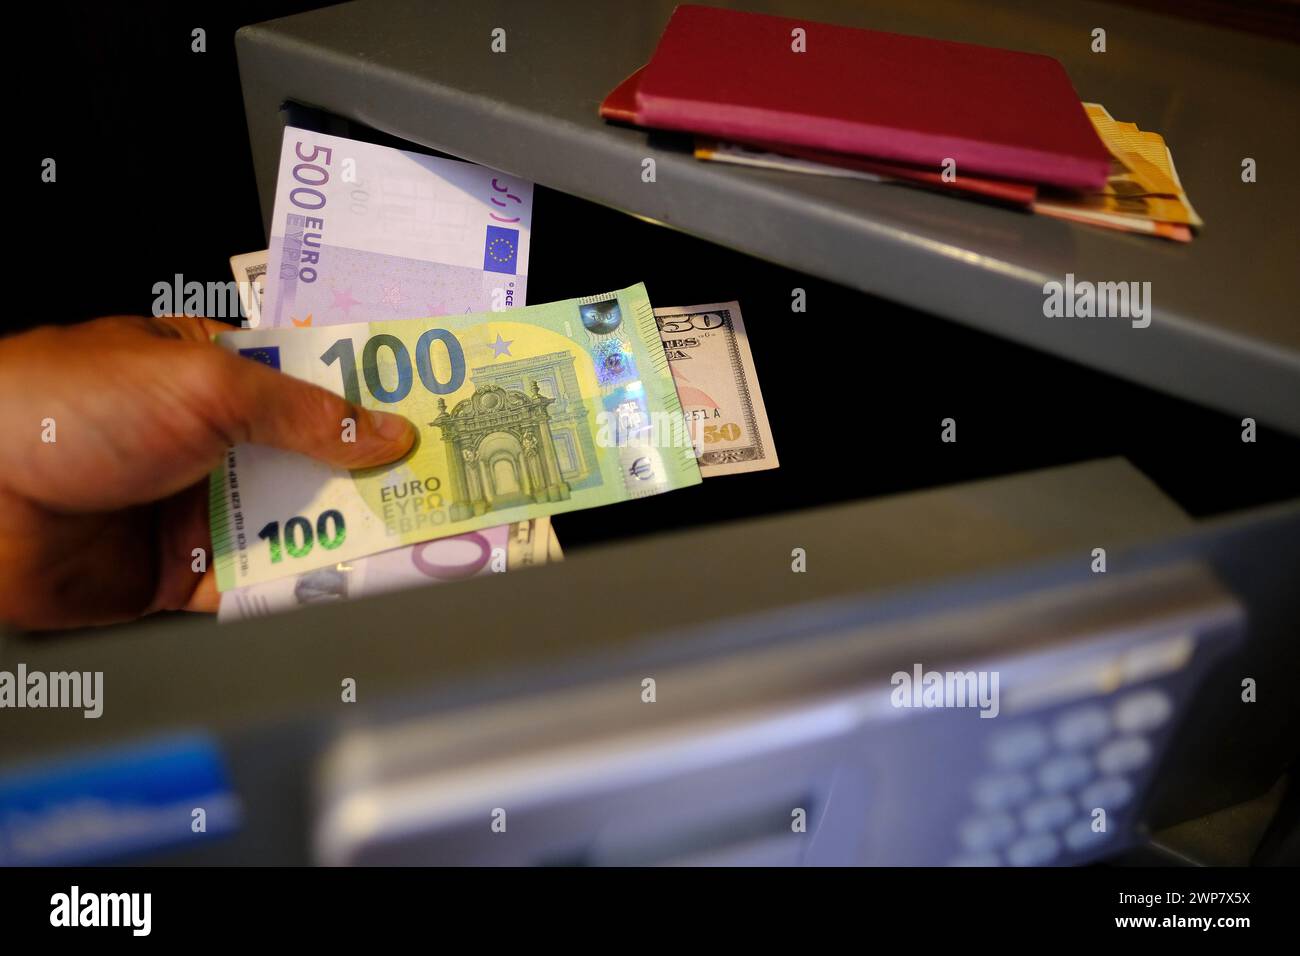 le mani maschili ravvicinate tengono 50 banconote da 500 euro dell'unione europea, documenti personali, il turista mette il denaro nella cassaforte dell'hotel con serratura elettronica, concetto Foto Stock